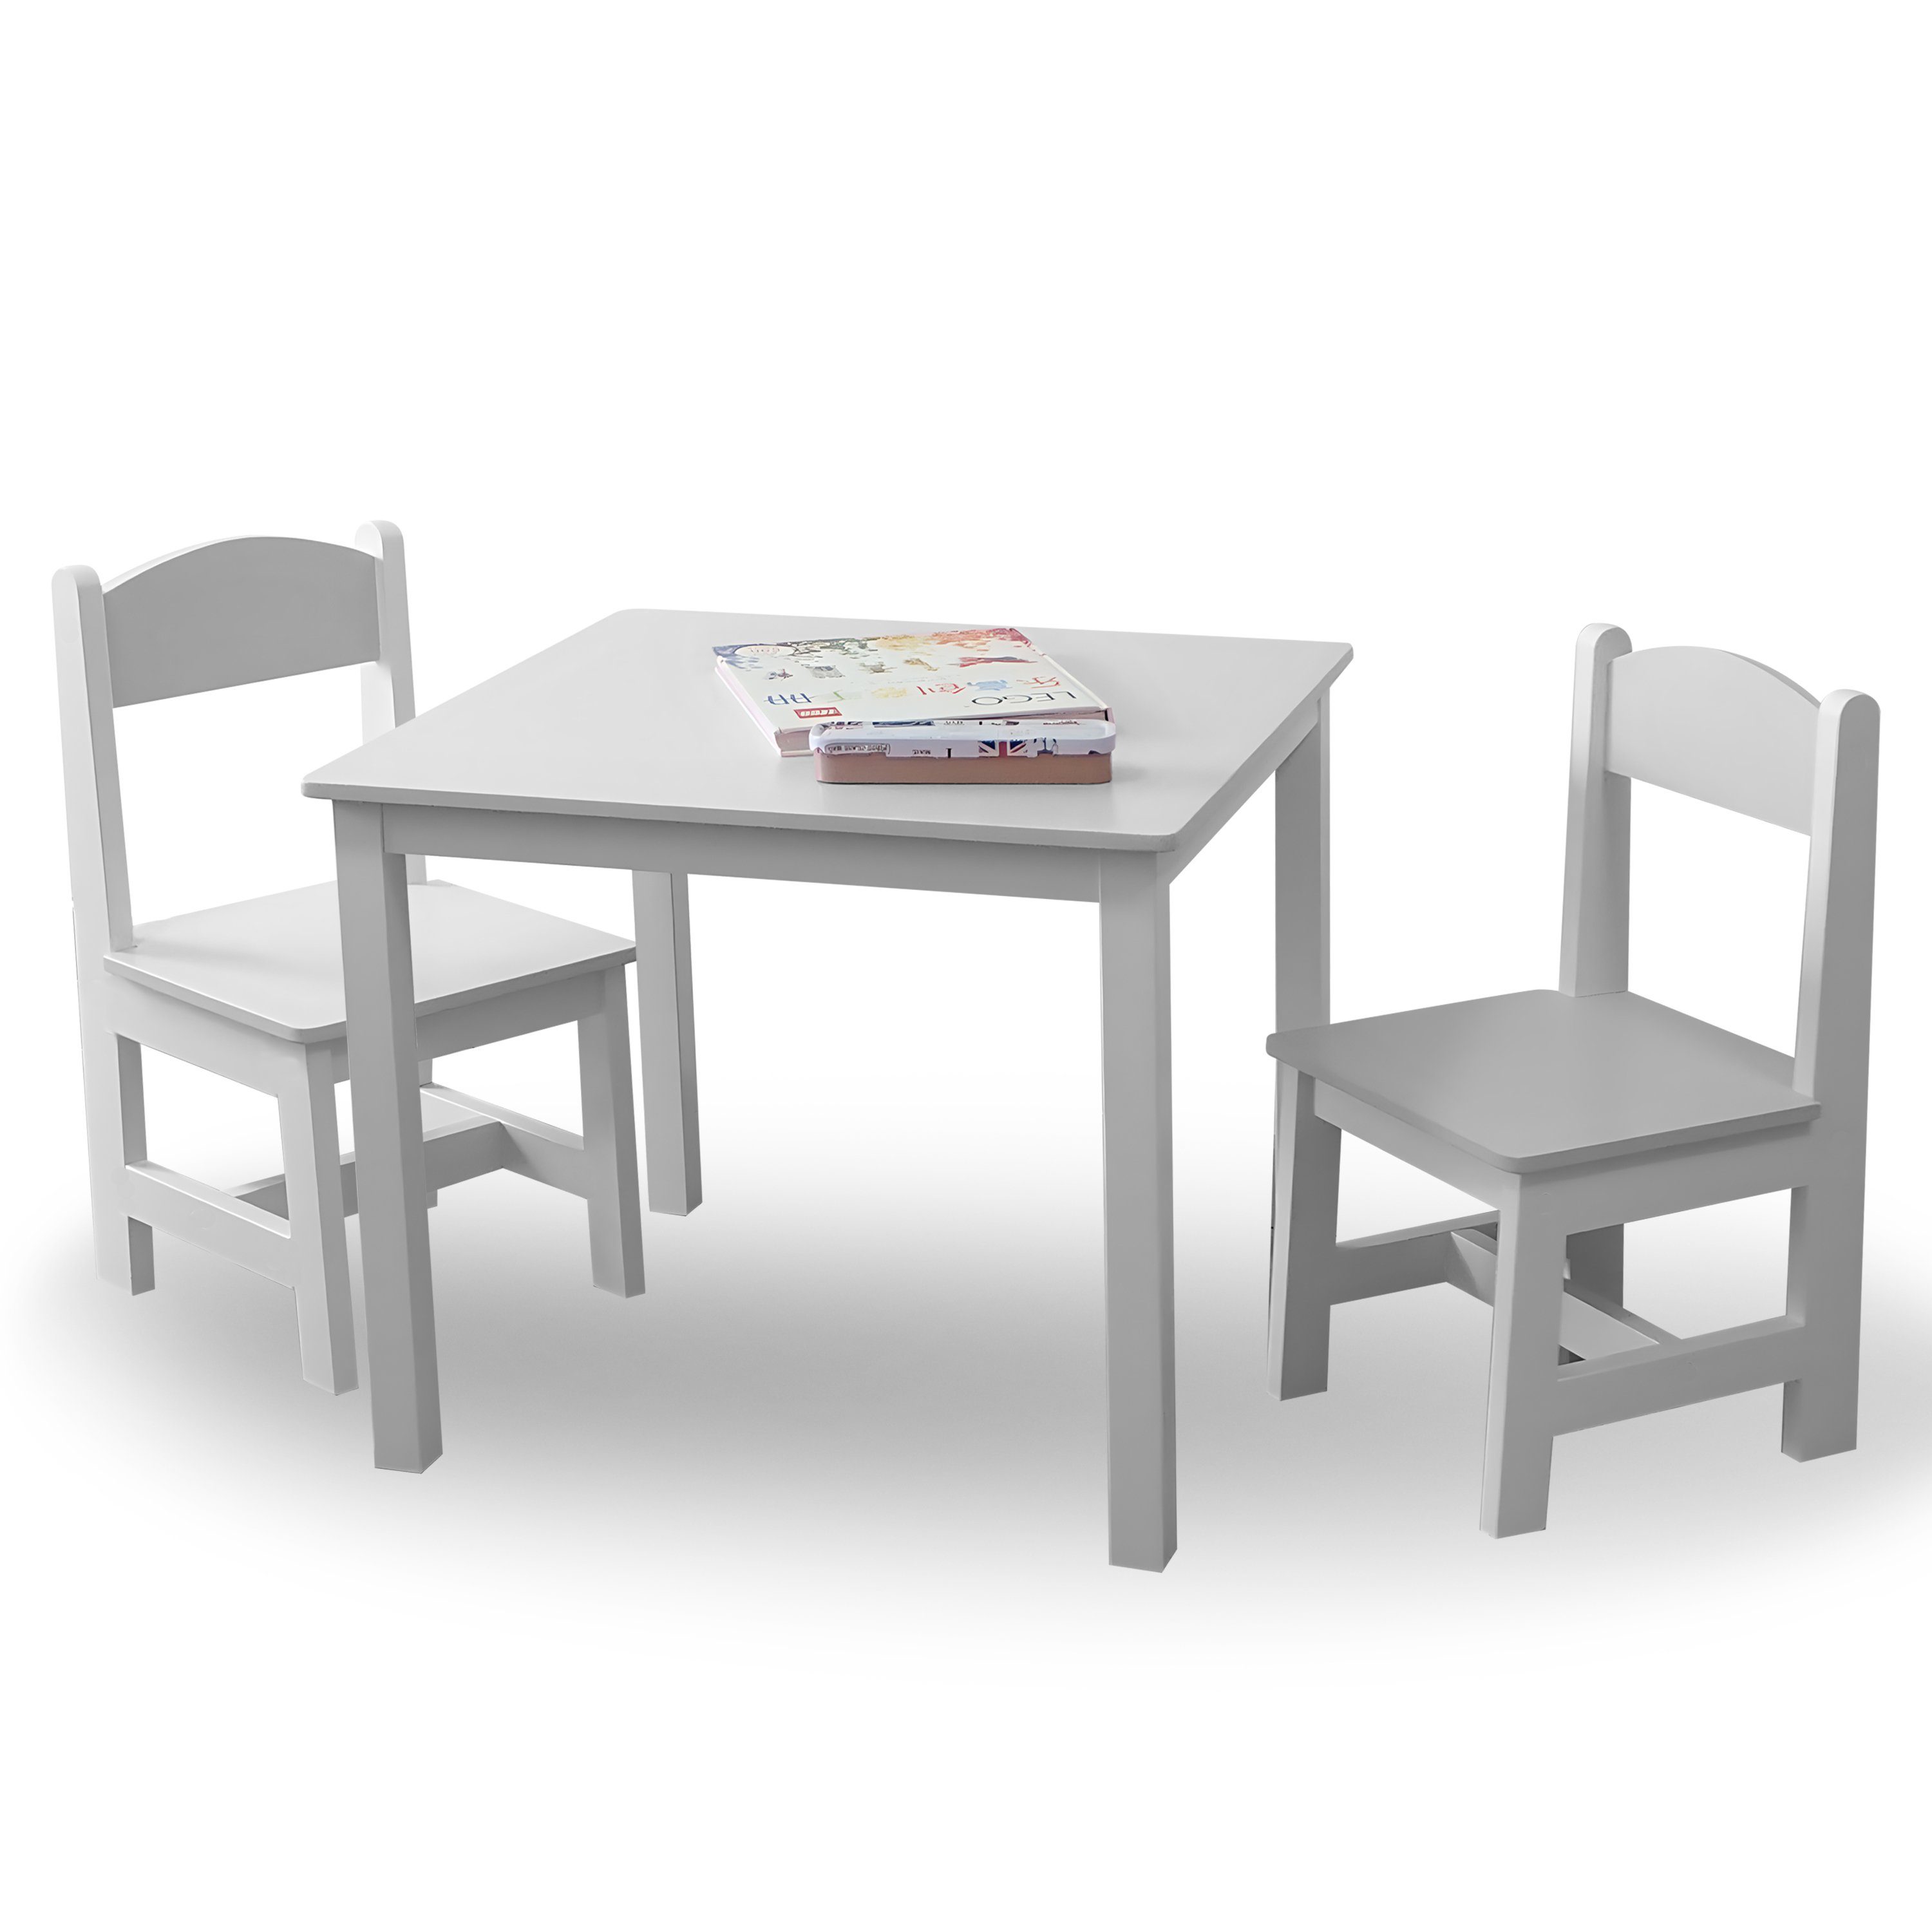 habeig Kindersitzgruppe Kindertisch & 2 Stühle Kindermöbelset Maltisch Hocker 60x50x50cm Weiß